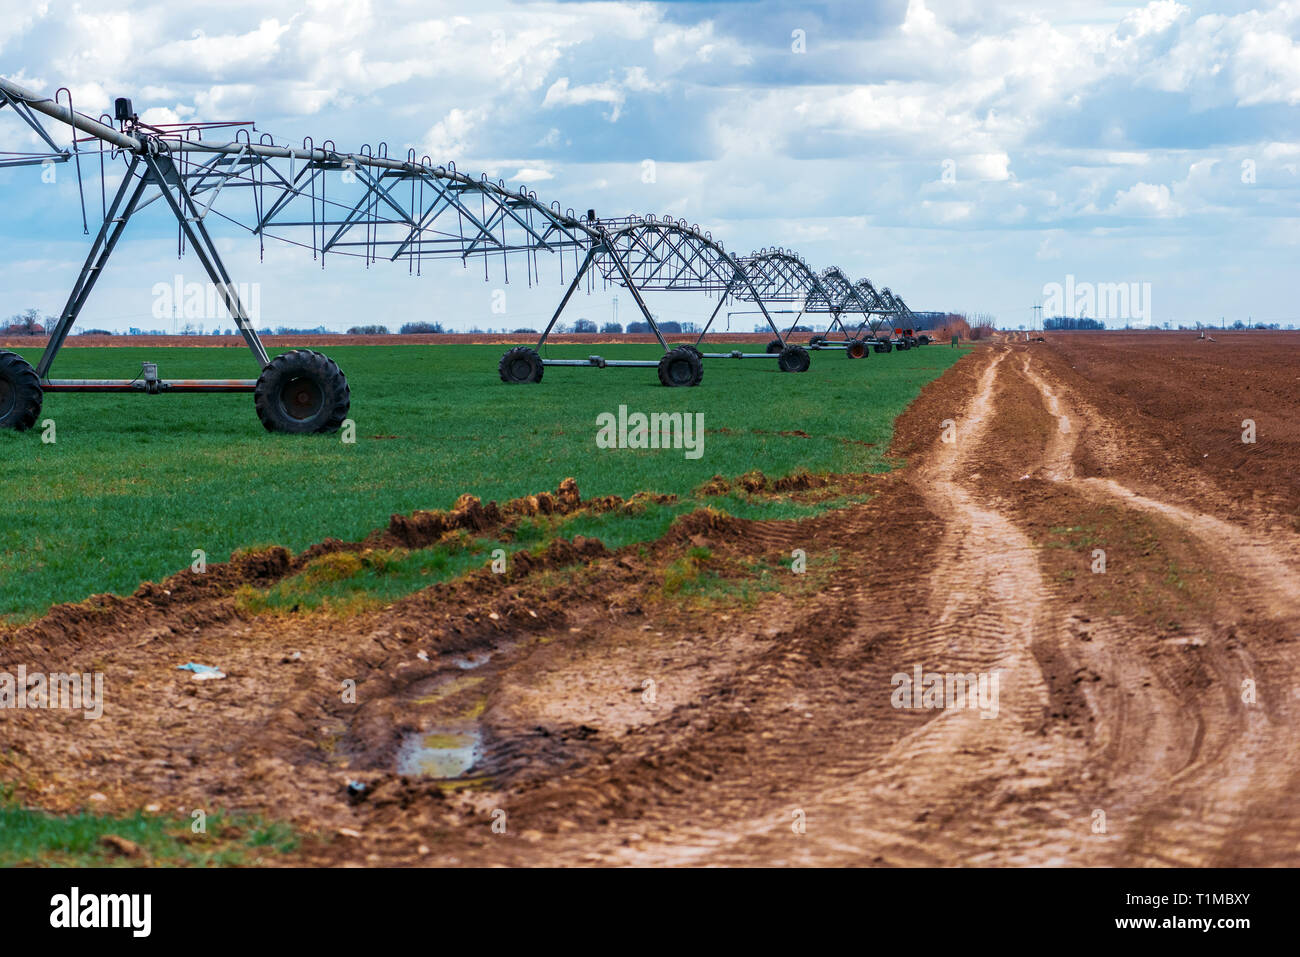 Sistema de riego de pivote central en el cultivo de trigo cultivado campo agrícola Foto de stock